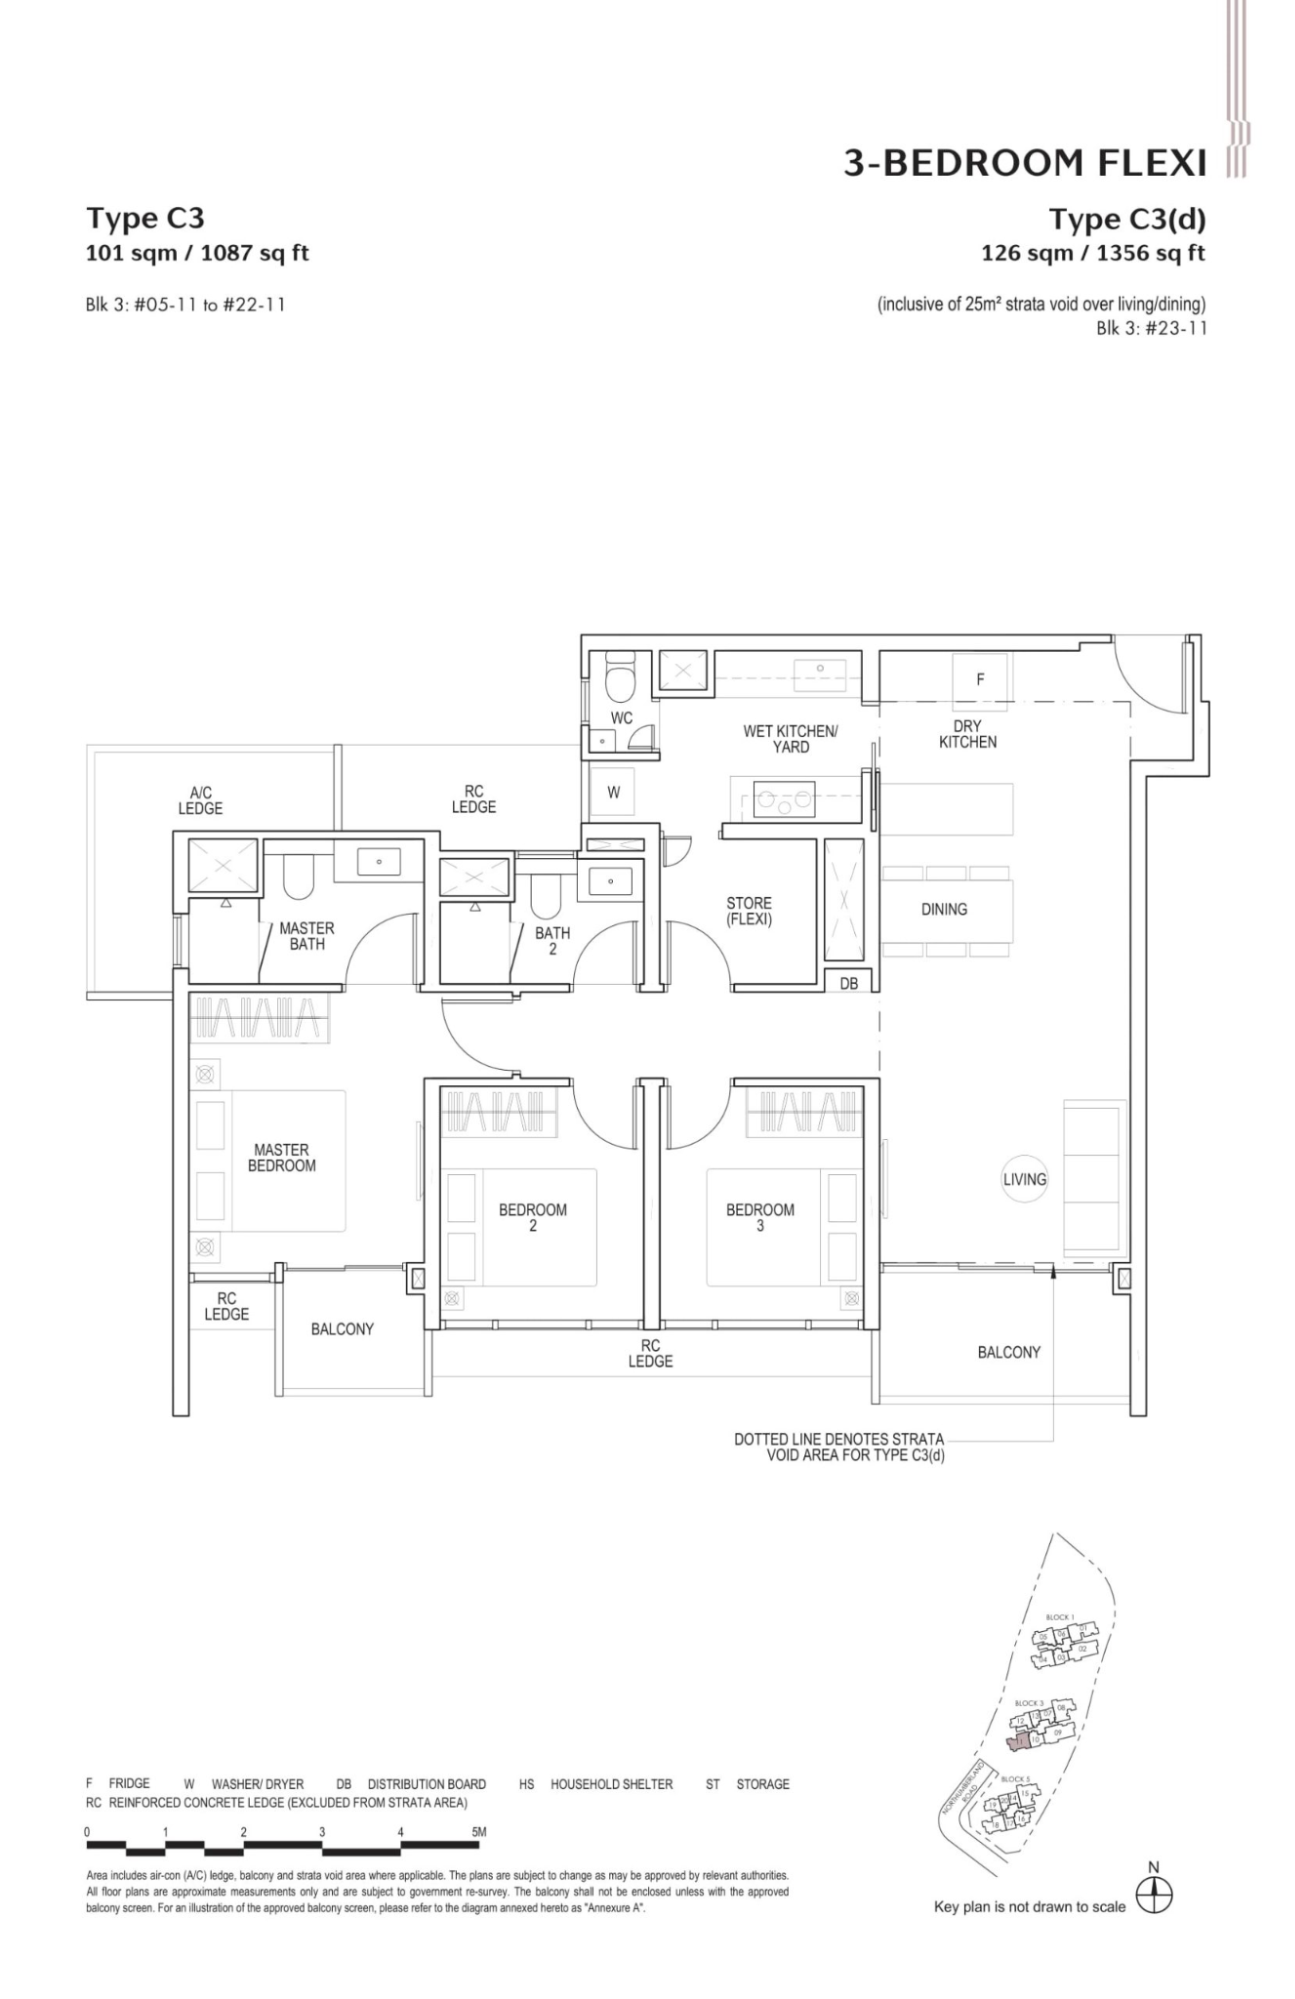 3 Bedroom Flexi Floor Plan